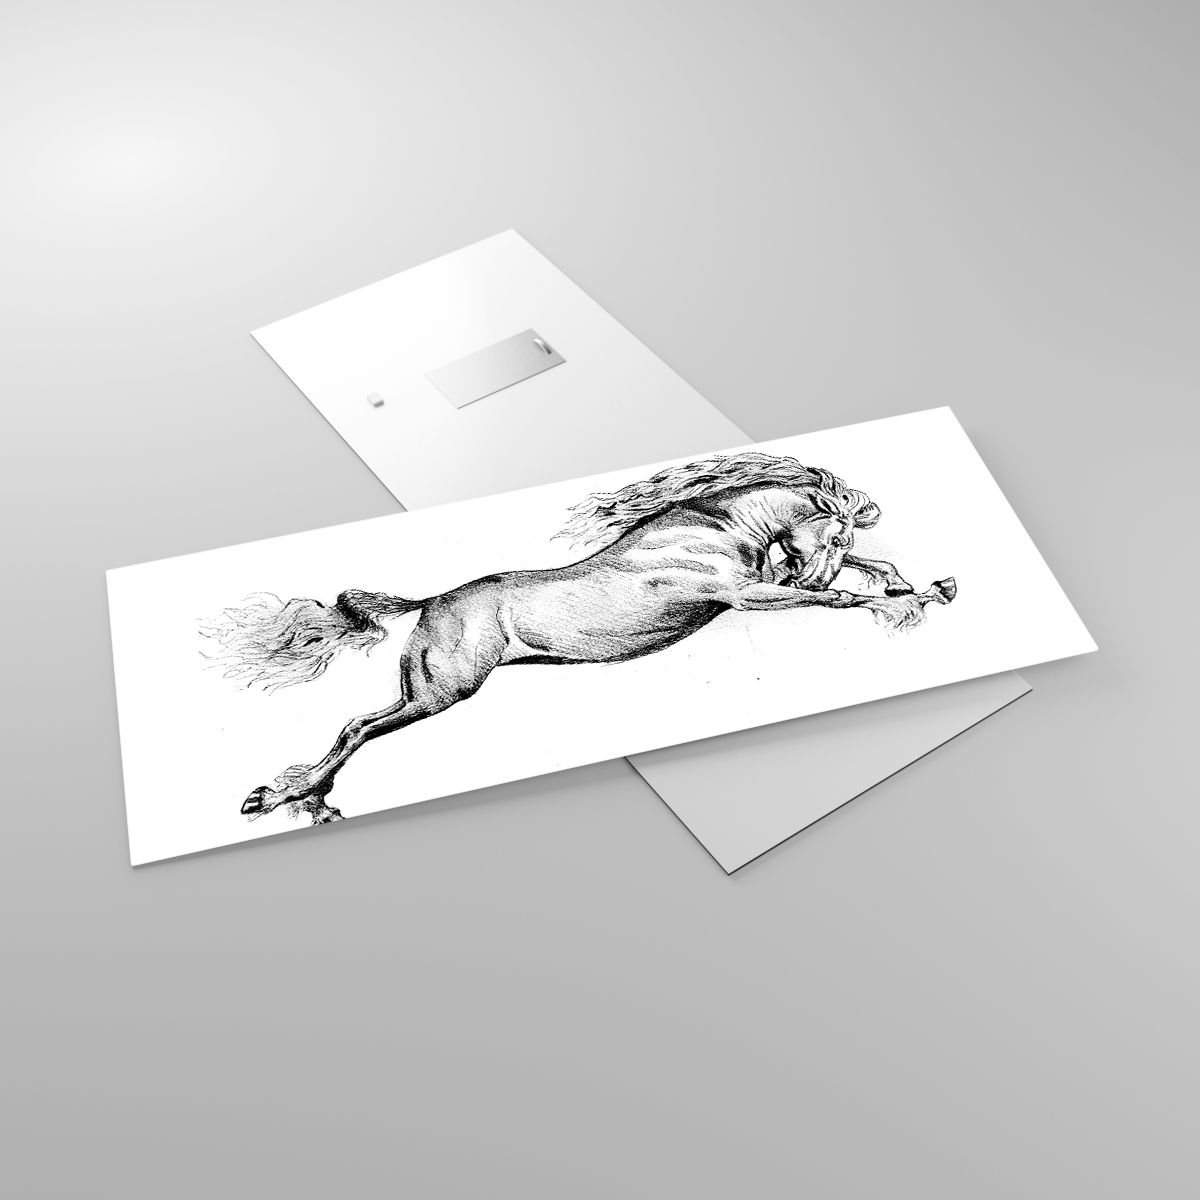 Glasbild Pferd, Glasbild Tiere, Glasbild Grafik, Glasbild Schwarz Und Weiß, Glasbild Springen